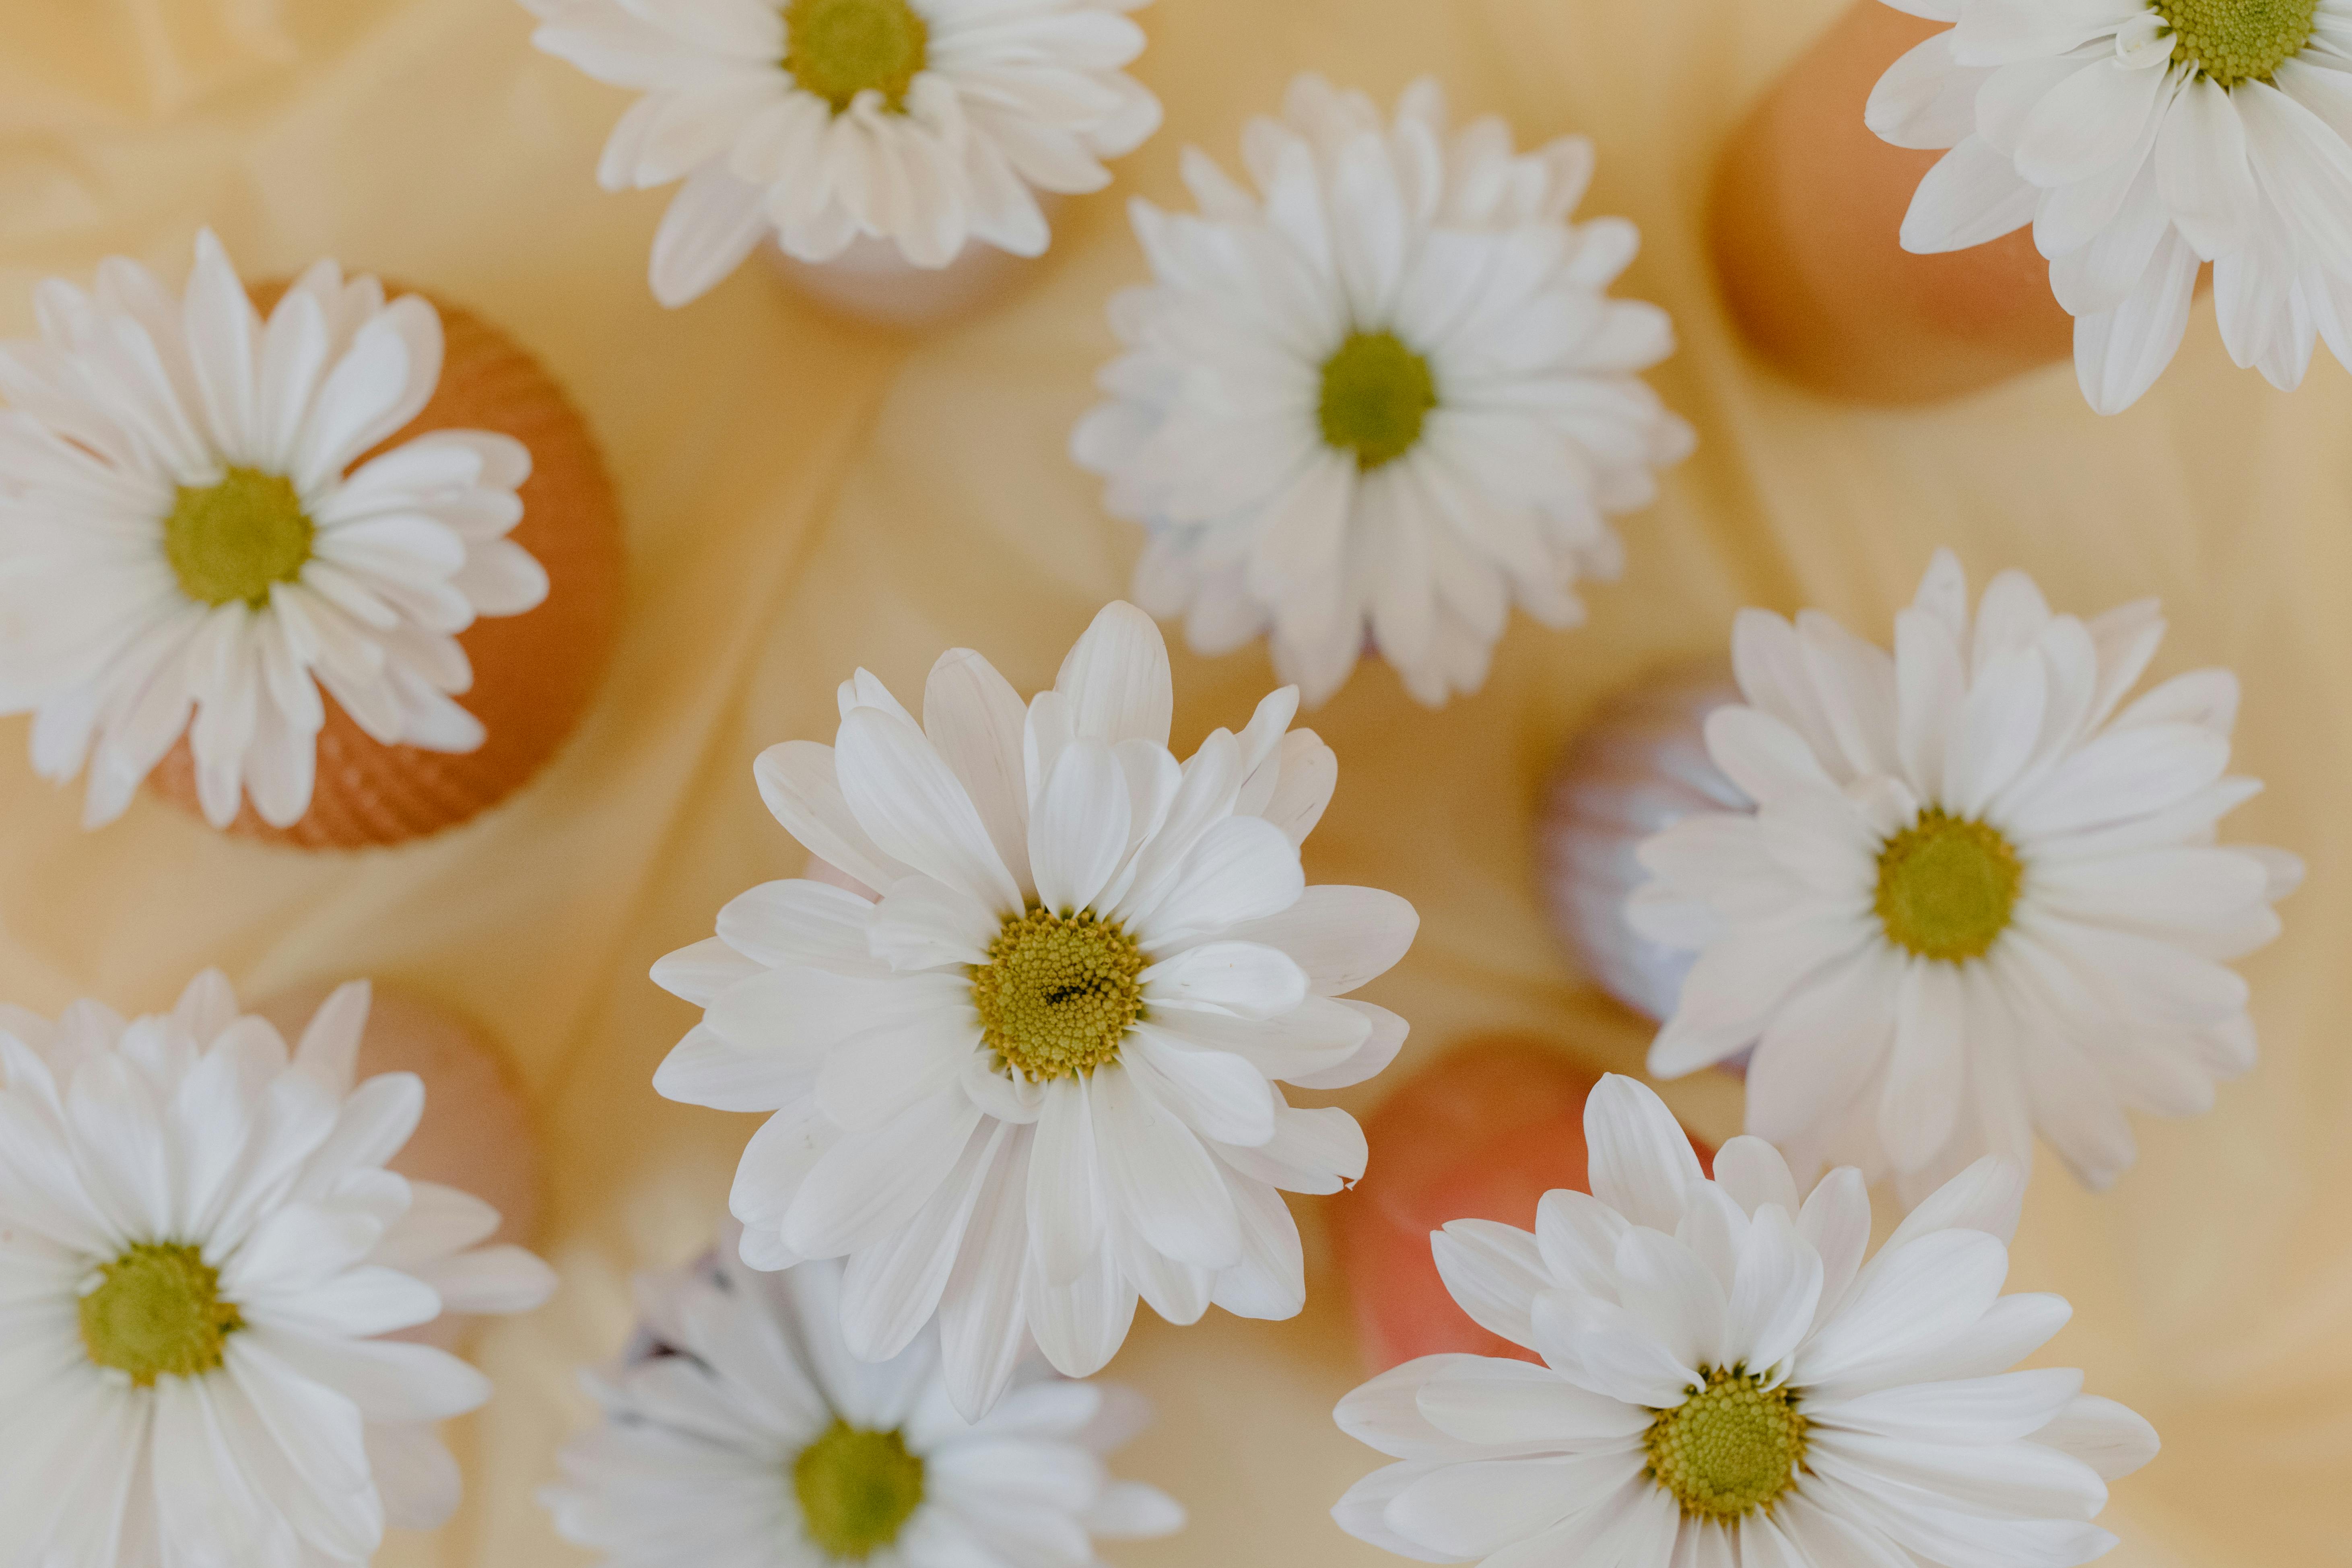 Hoa Cúc Trắng  Miễn Phí vector hình ảnh trên Pixabay  Pixabay